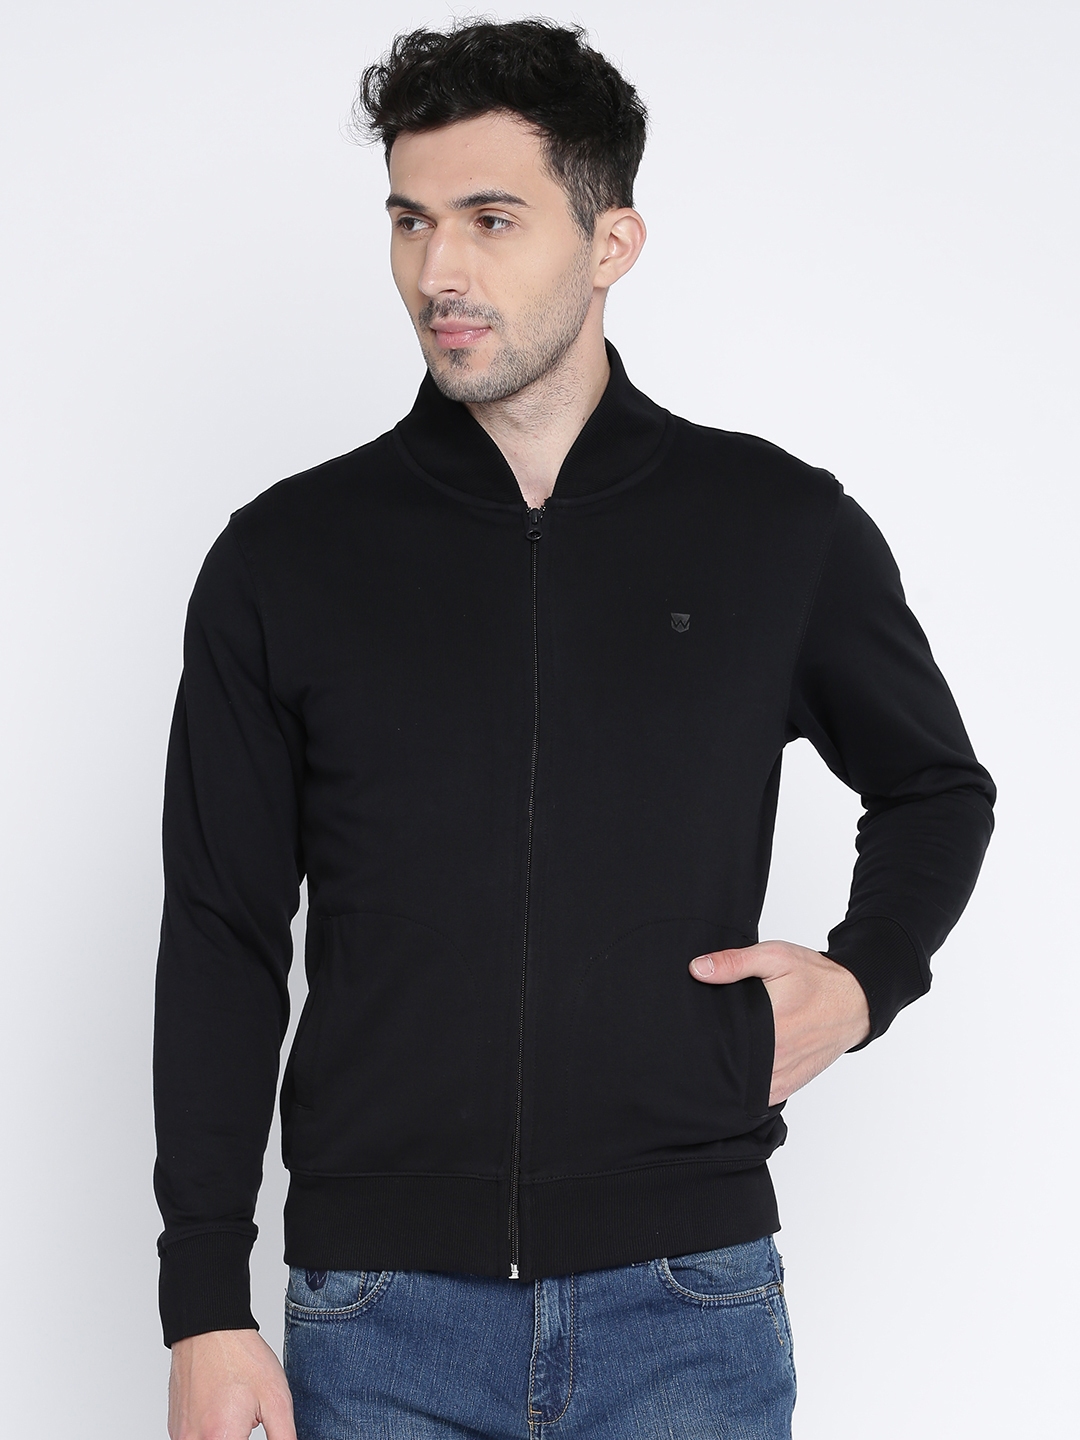 Buy Wrangler Men Black Solid Sweatshirt - Sweatshirts for Men 2203526 ...